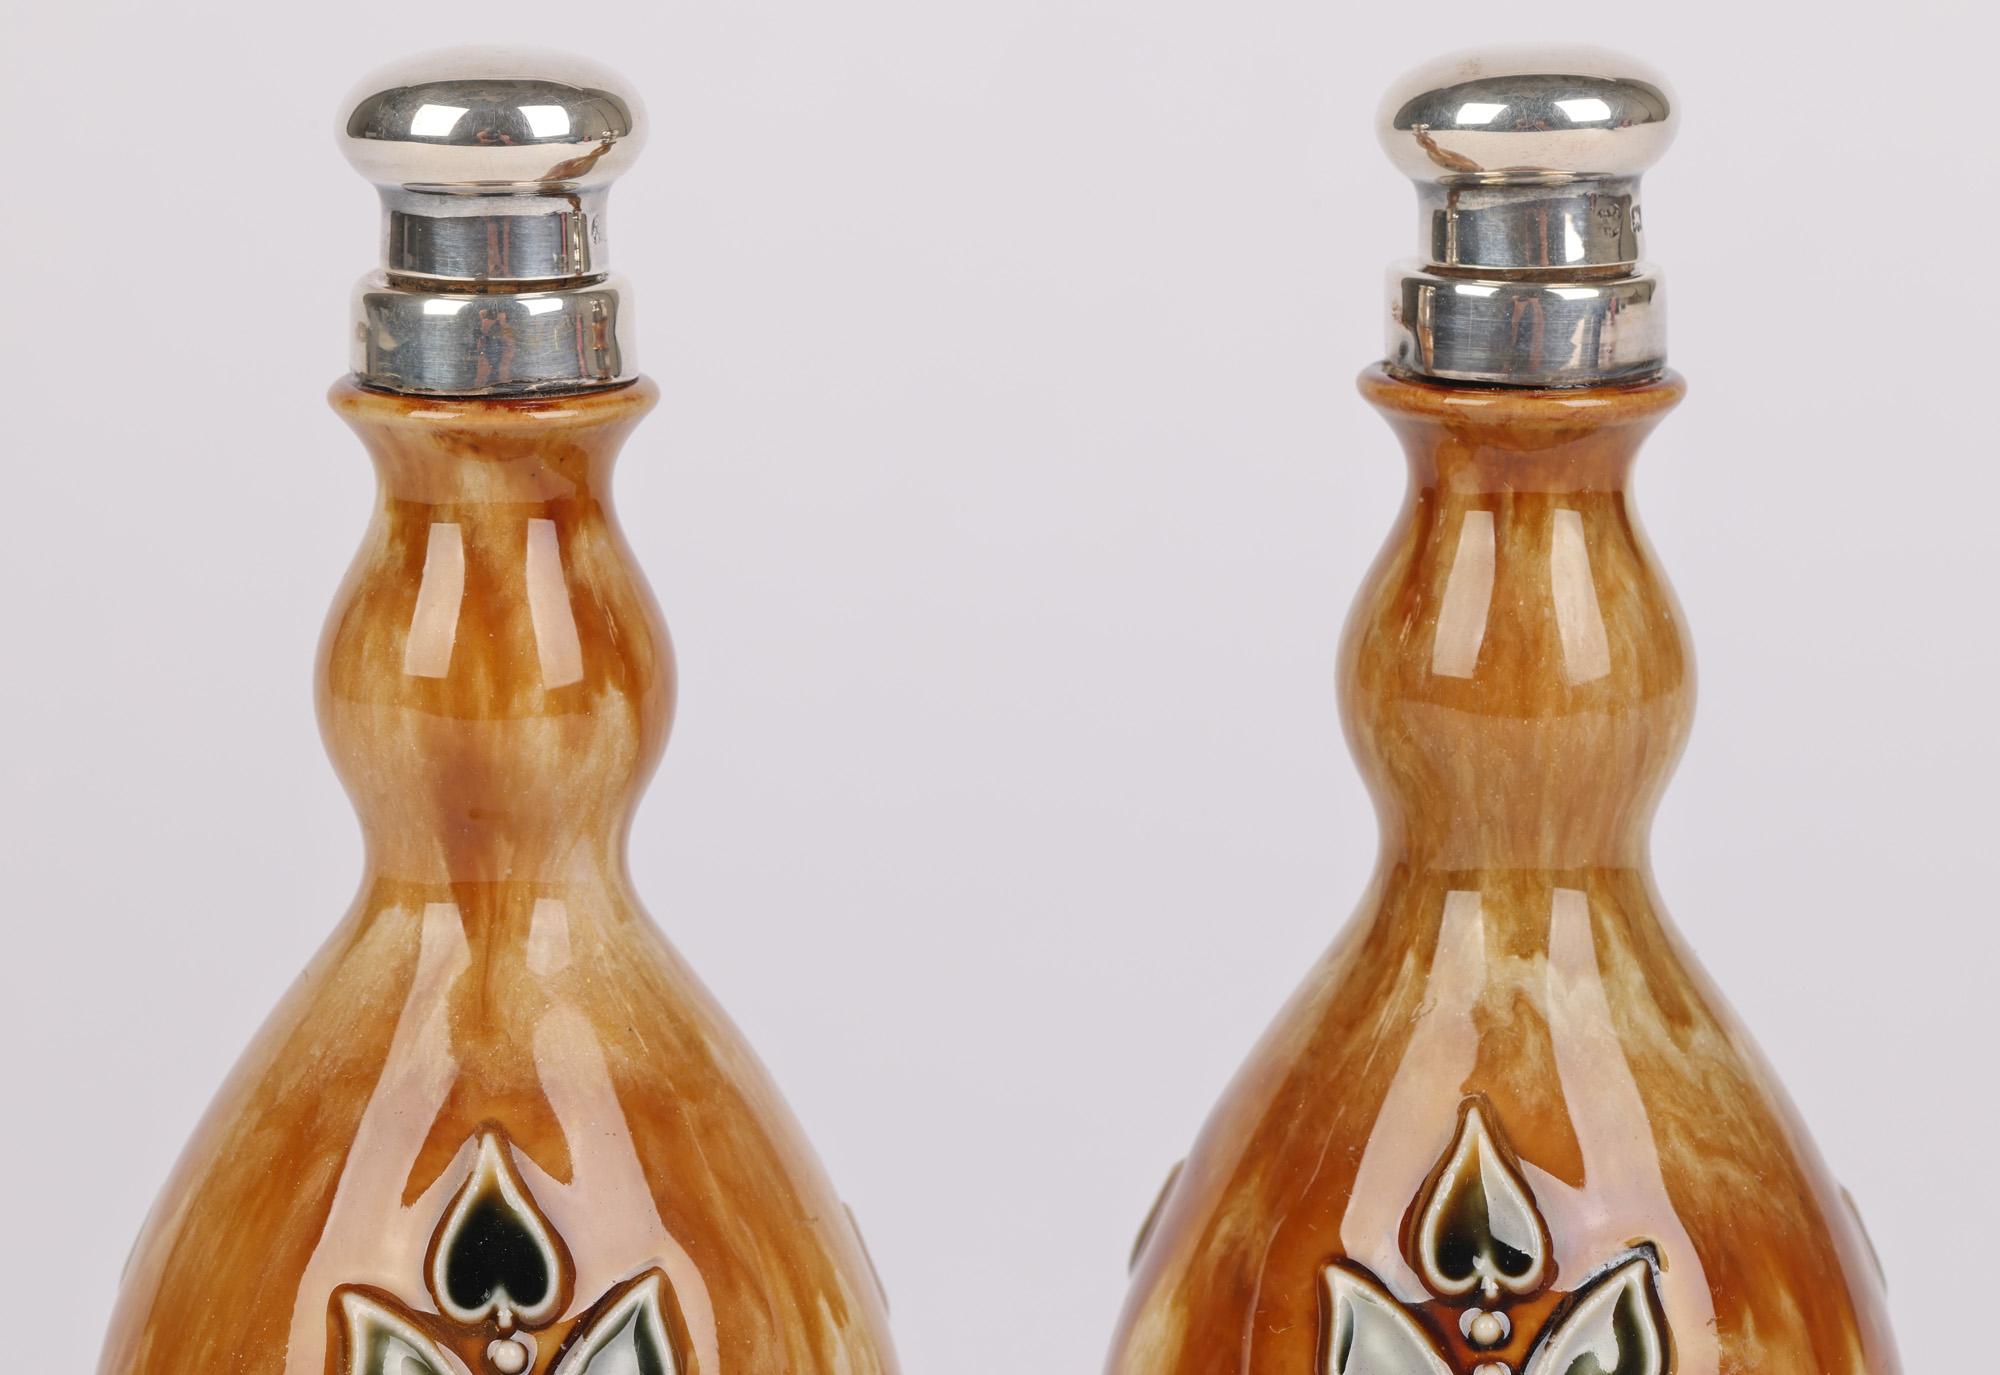 Une paire très rare de flacons à eau de rose Doulton Lambeth montés en argent, décorés de motifs floraux de style Art Nouveau par Miss O Heath et Winnie Bowstead et datant de 1920. Cette étonnante paire de flacons en forme de bouteille en céramique